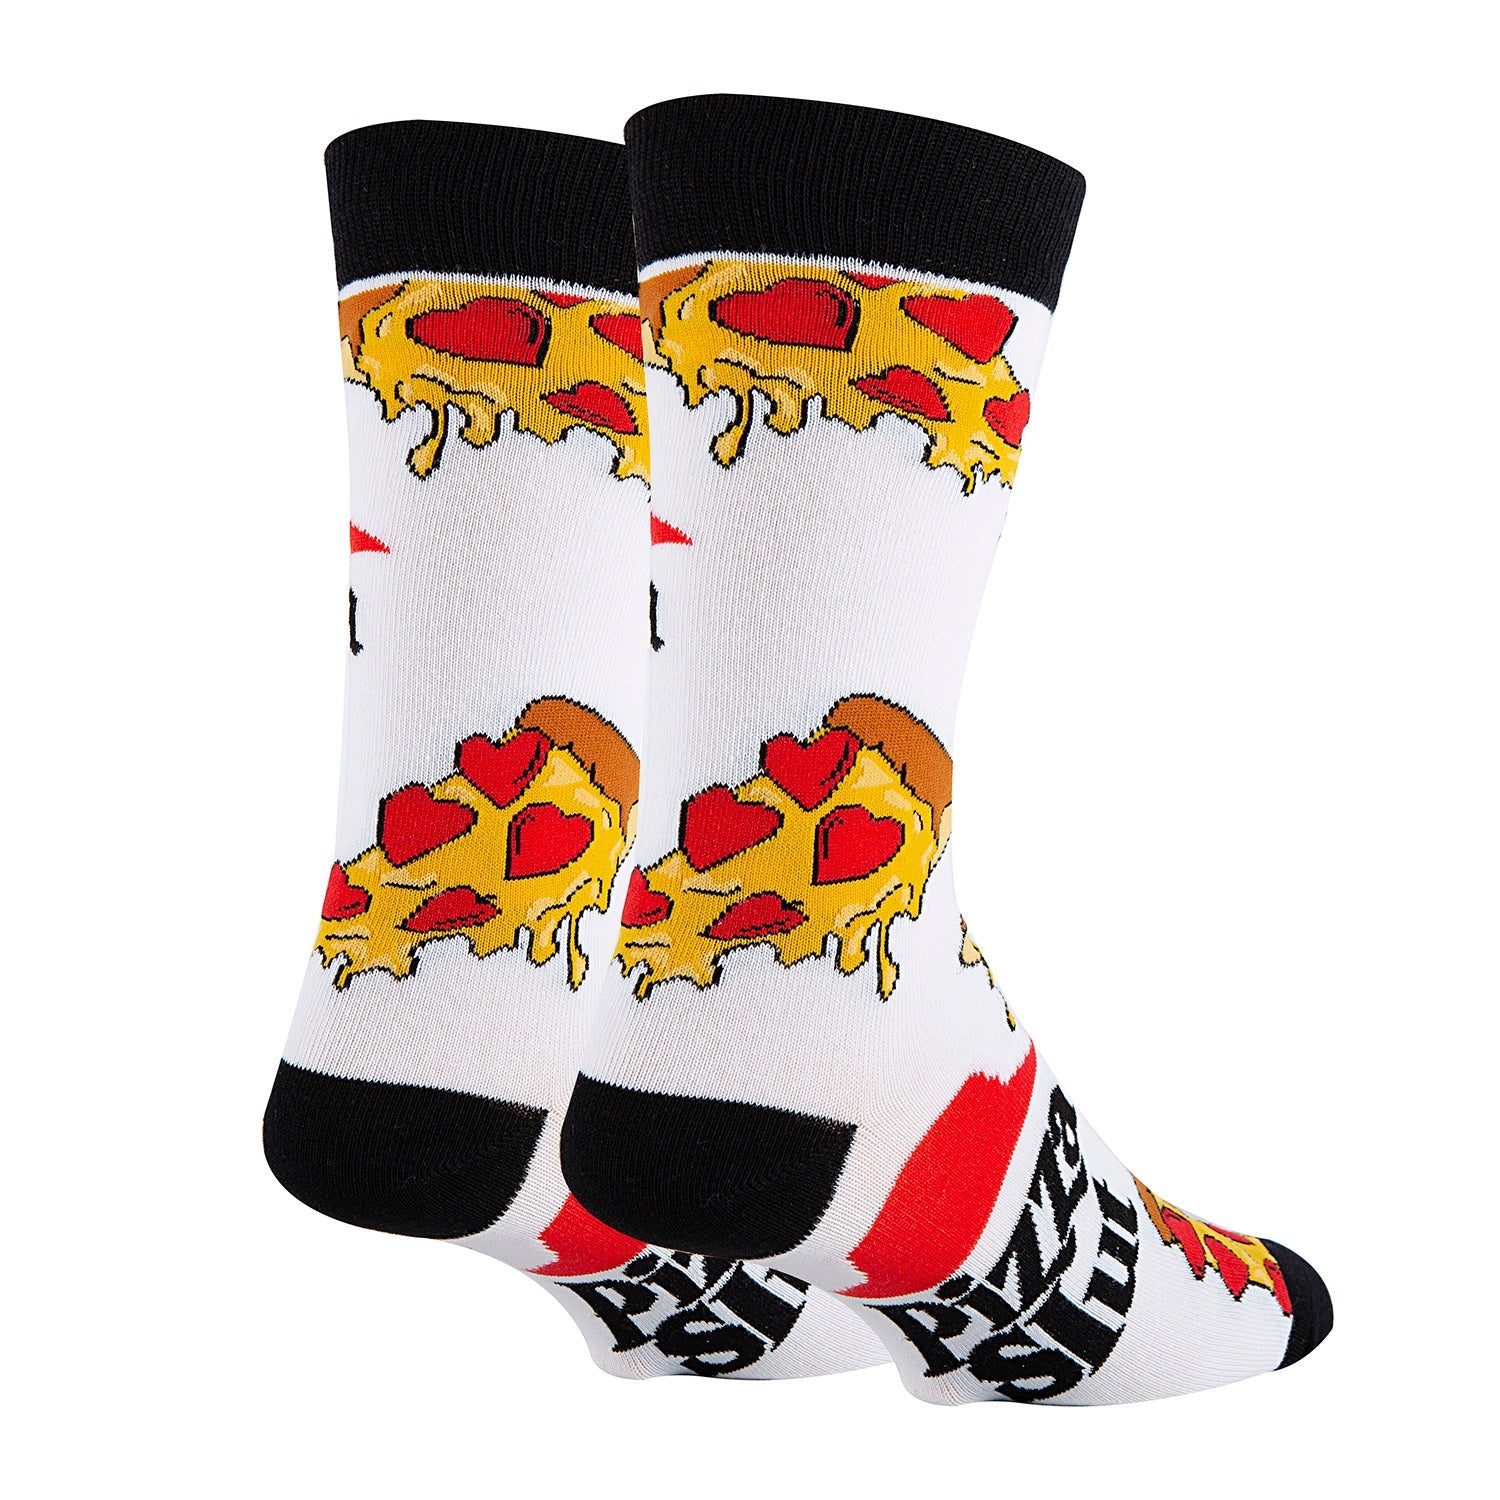 Pizza Slut Socks - 0